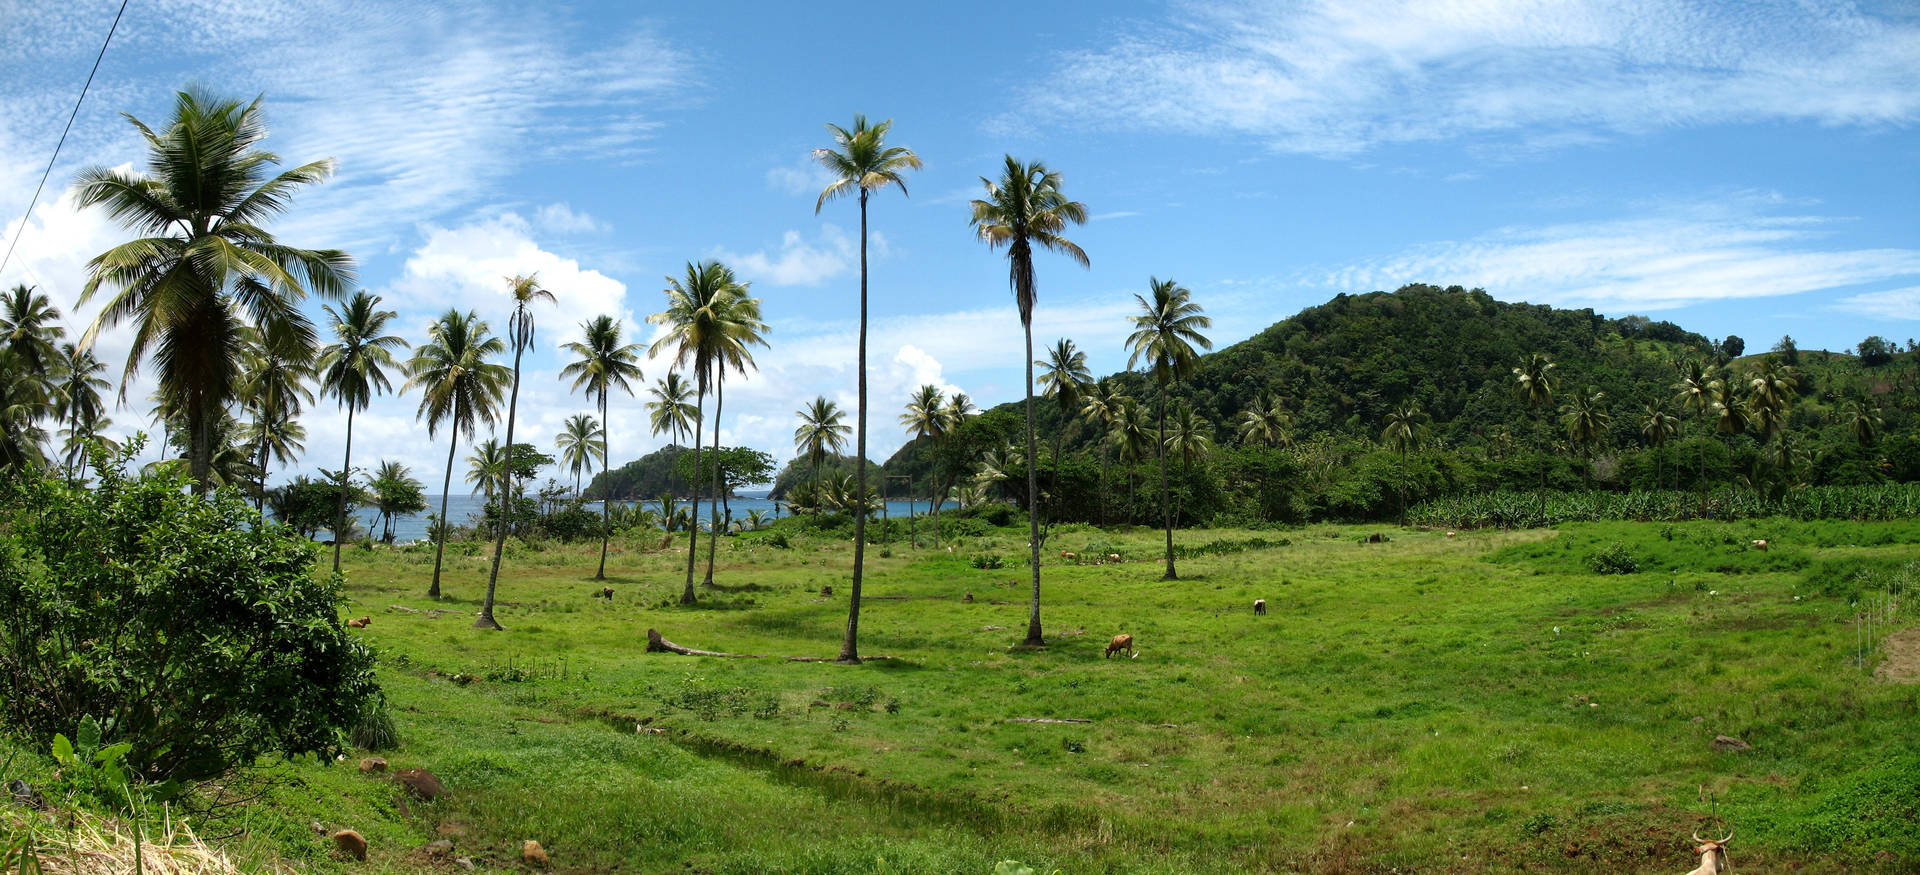 Sierra Leone Trees On Grass Field Background